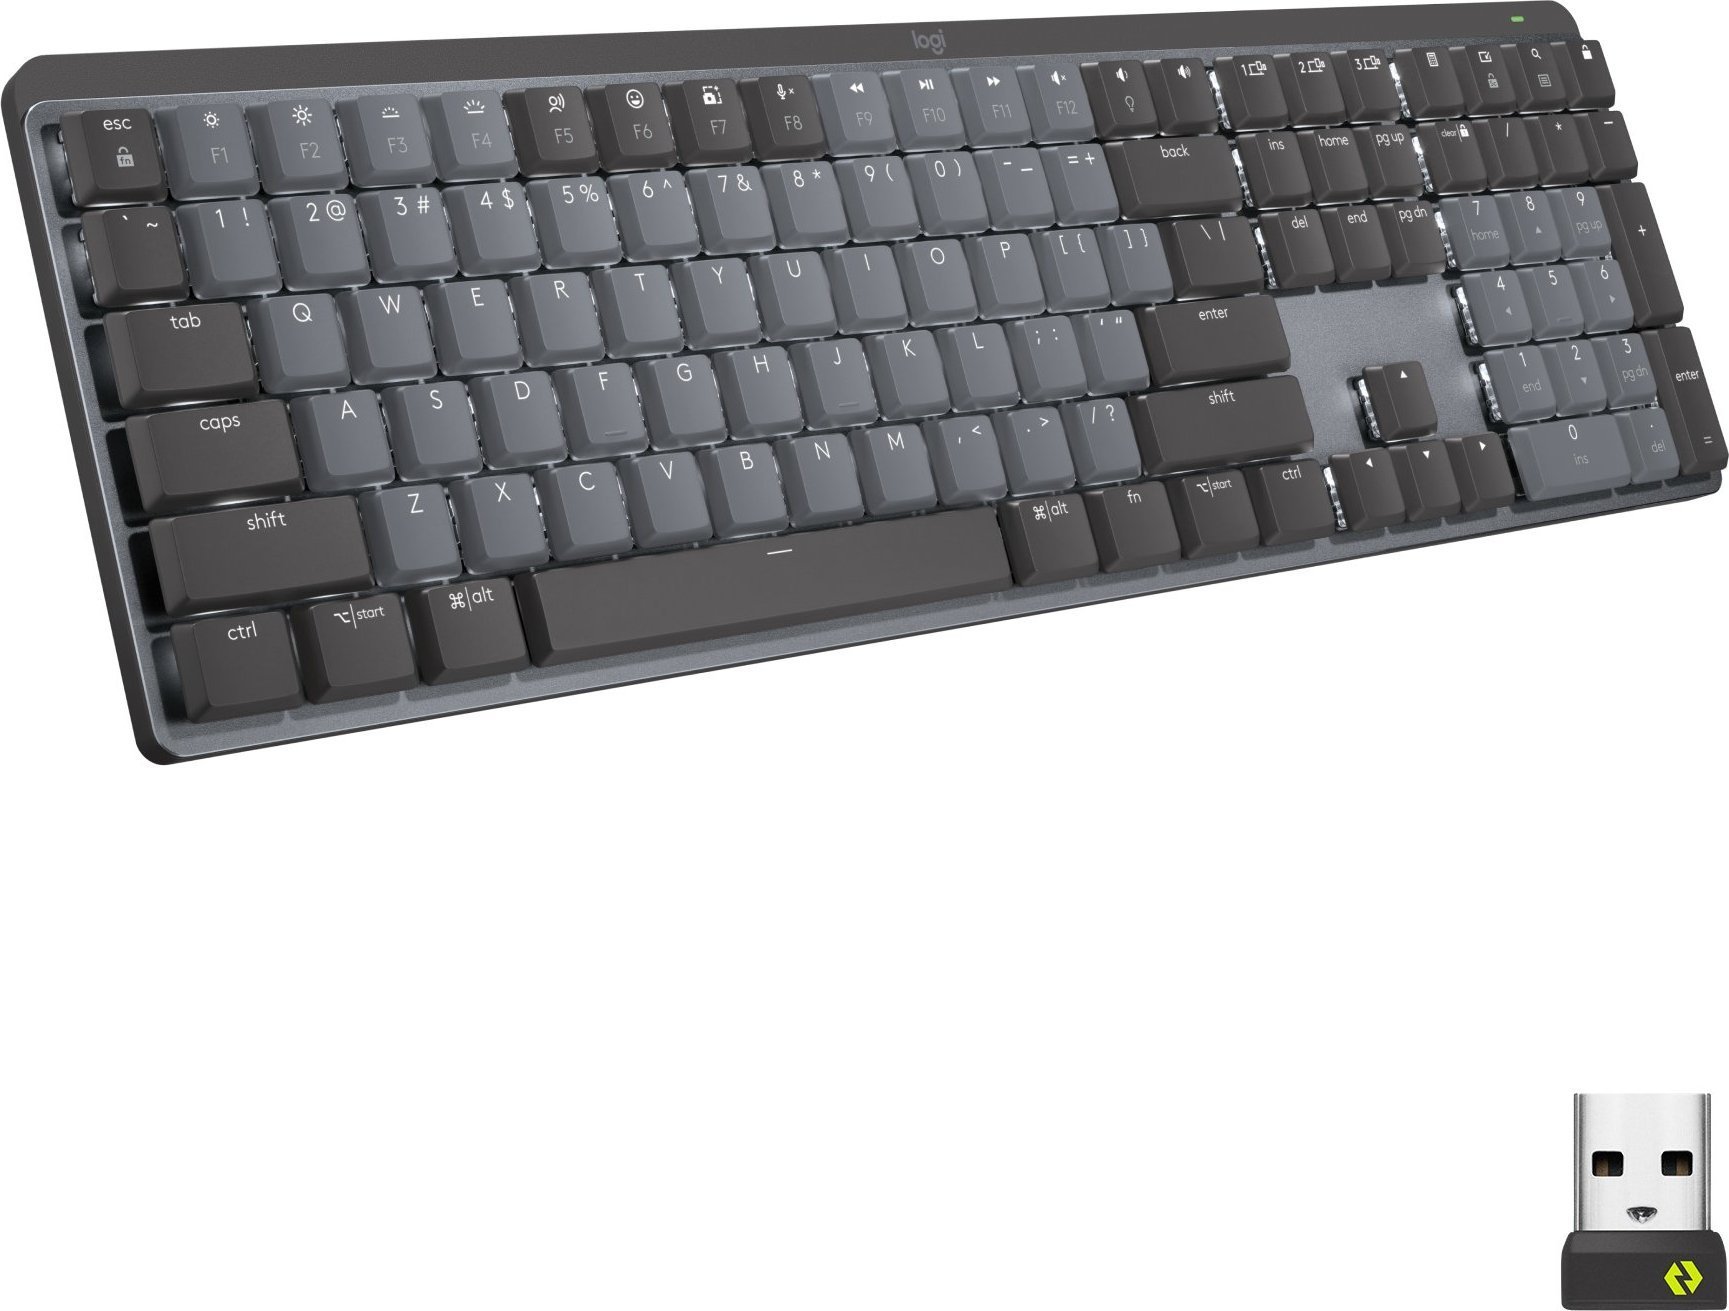 Tastaturi - Tastatură fără fir Logitech MX mecanică Clicky Grafit SUA (920-010759)